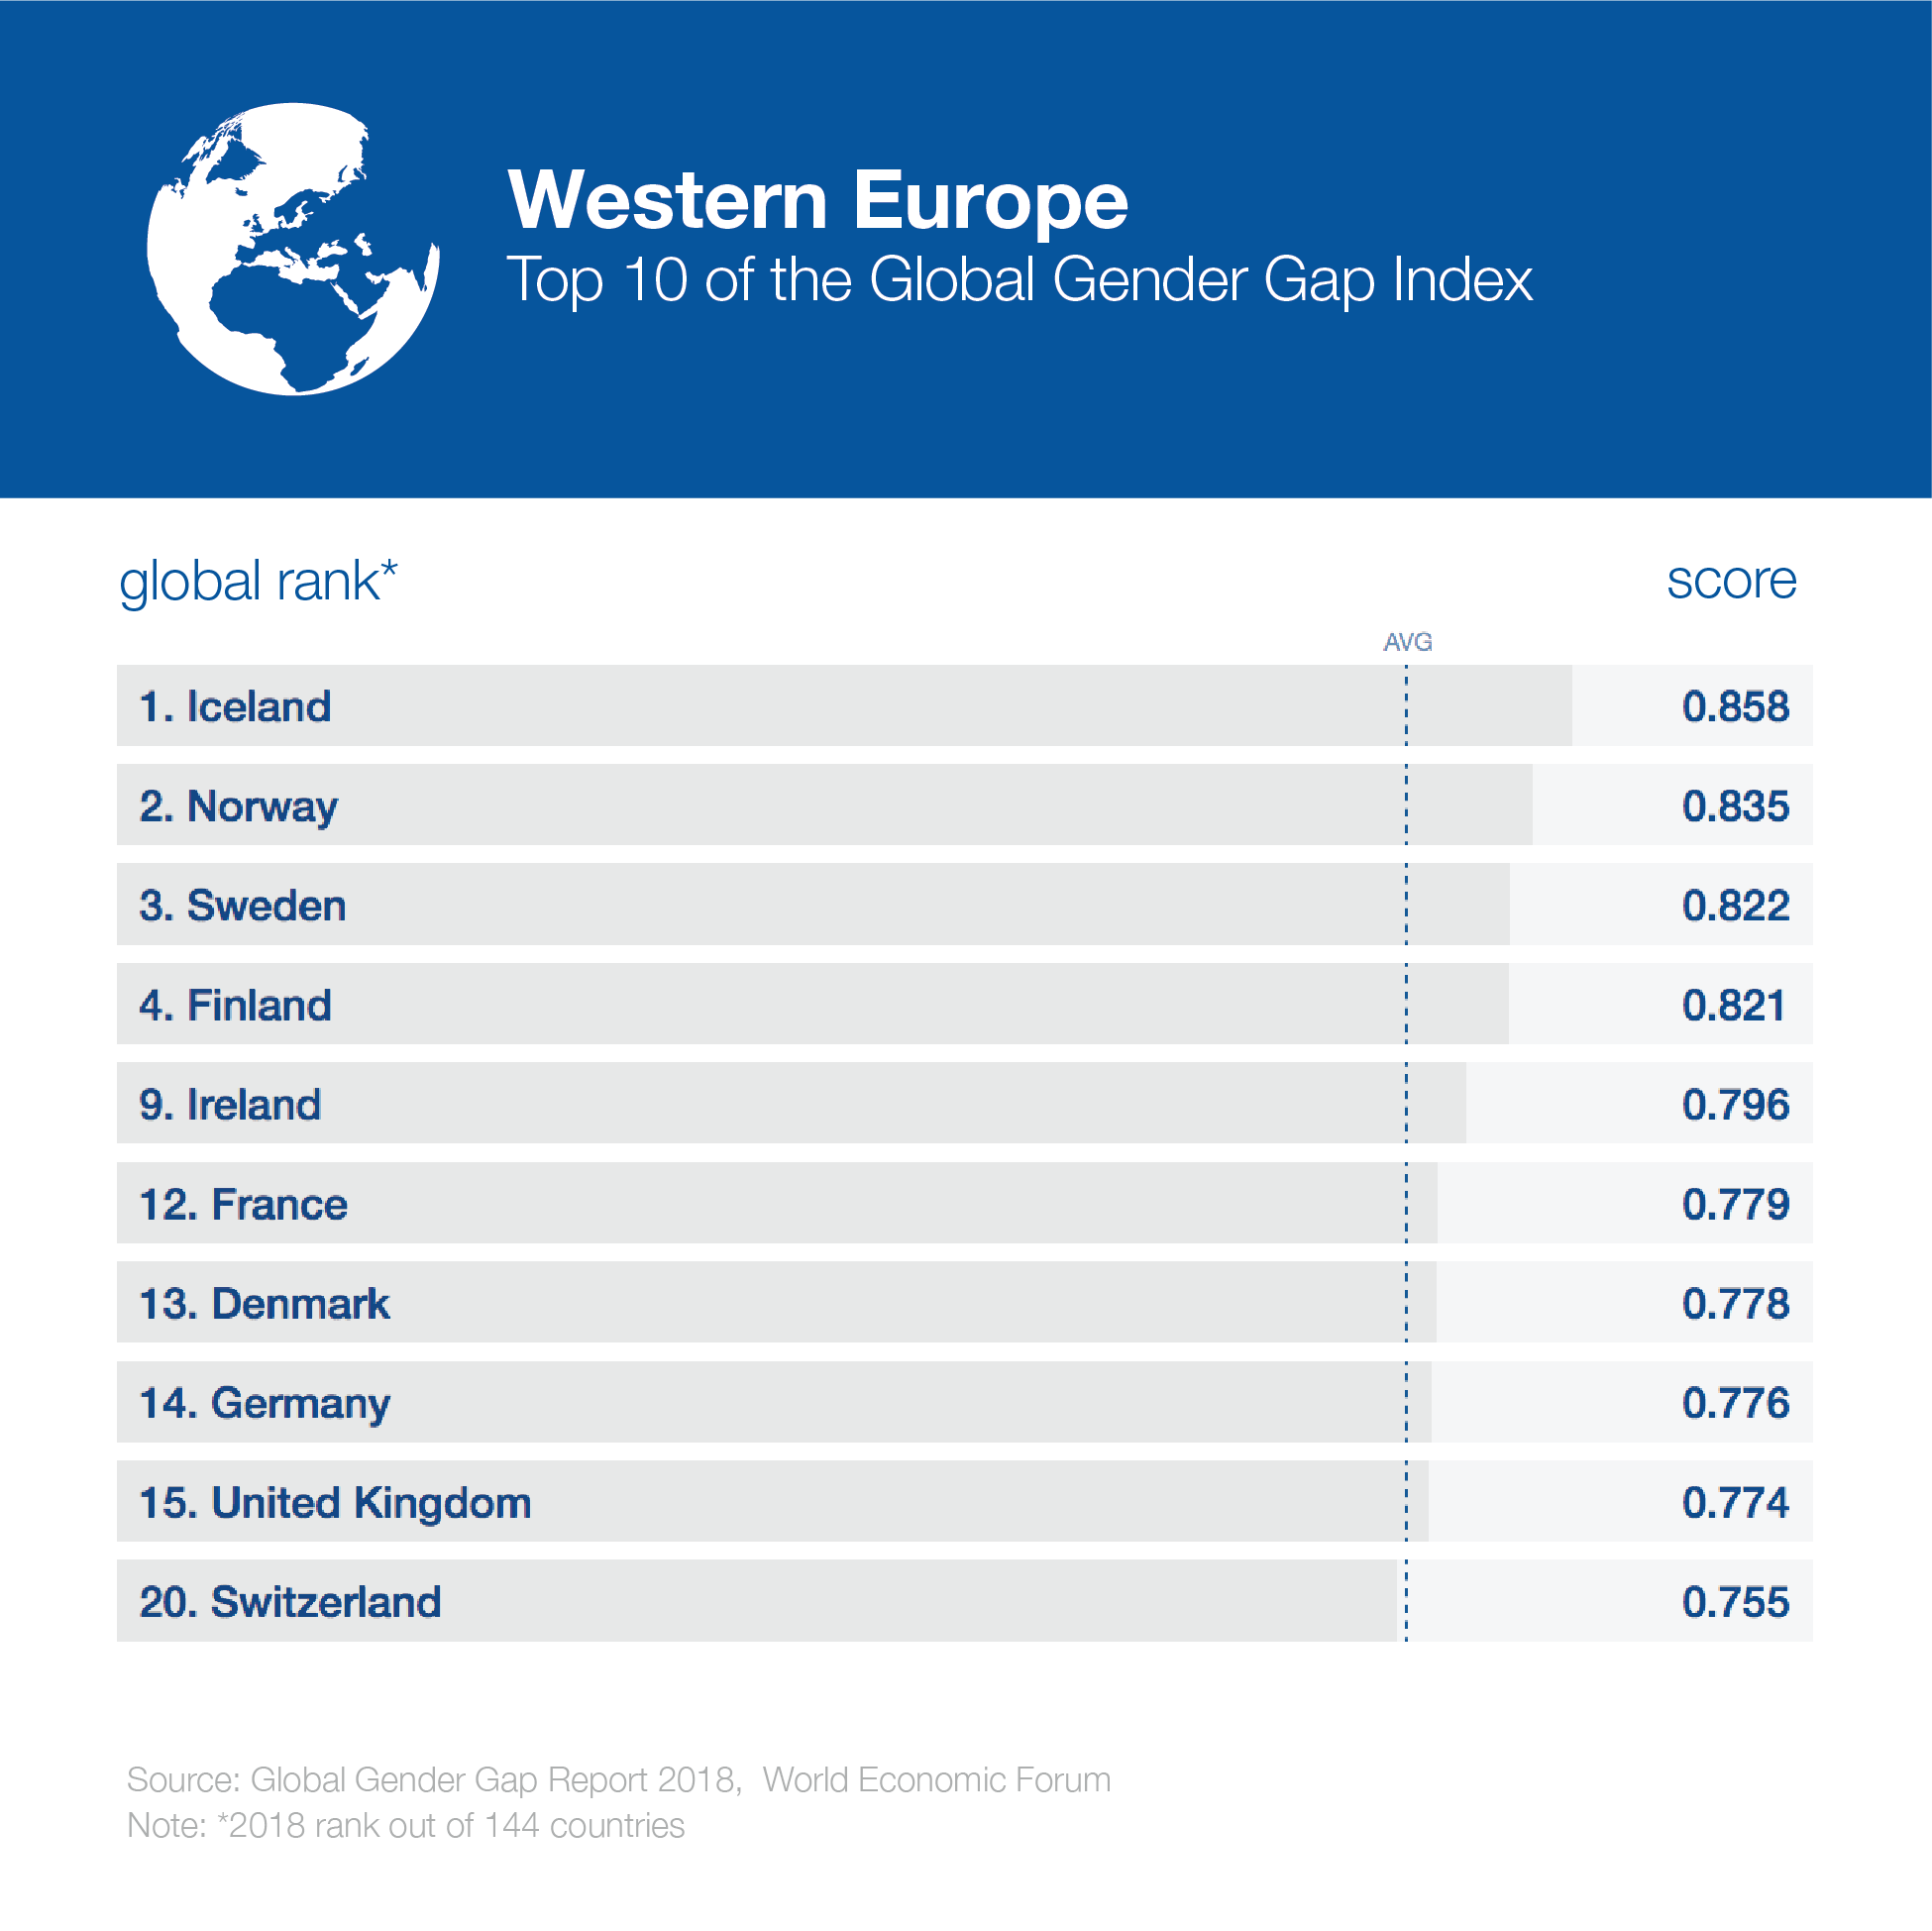 GenderGap_2018_2018_globaltop10_westerneurope-1.png